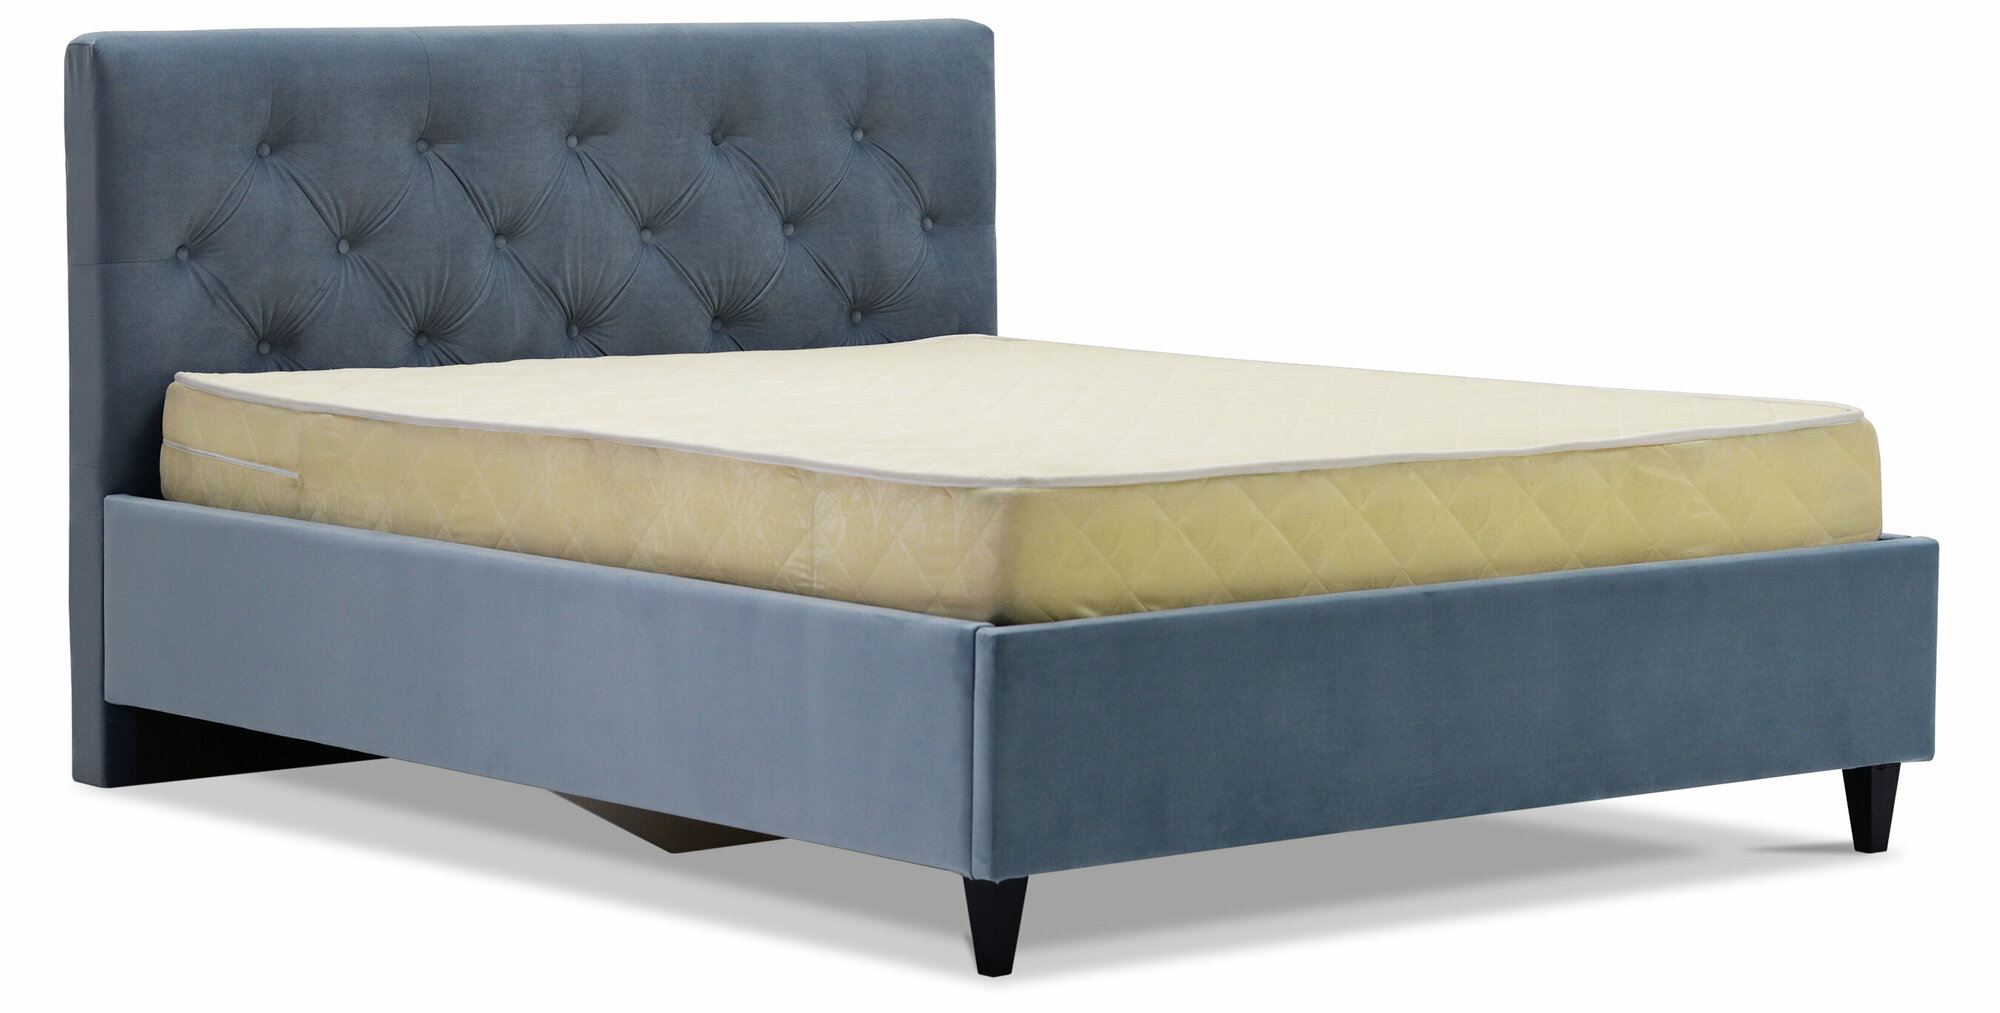 Кровать Селина 140х200, с подъемным механизмом, Confetti blue stone